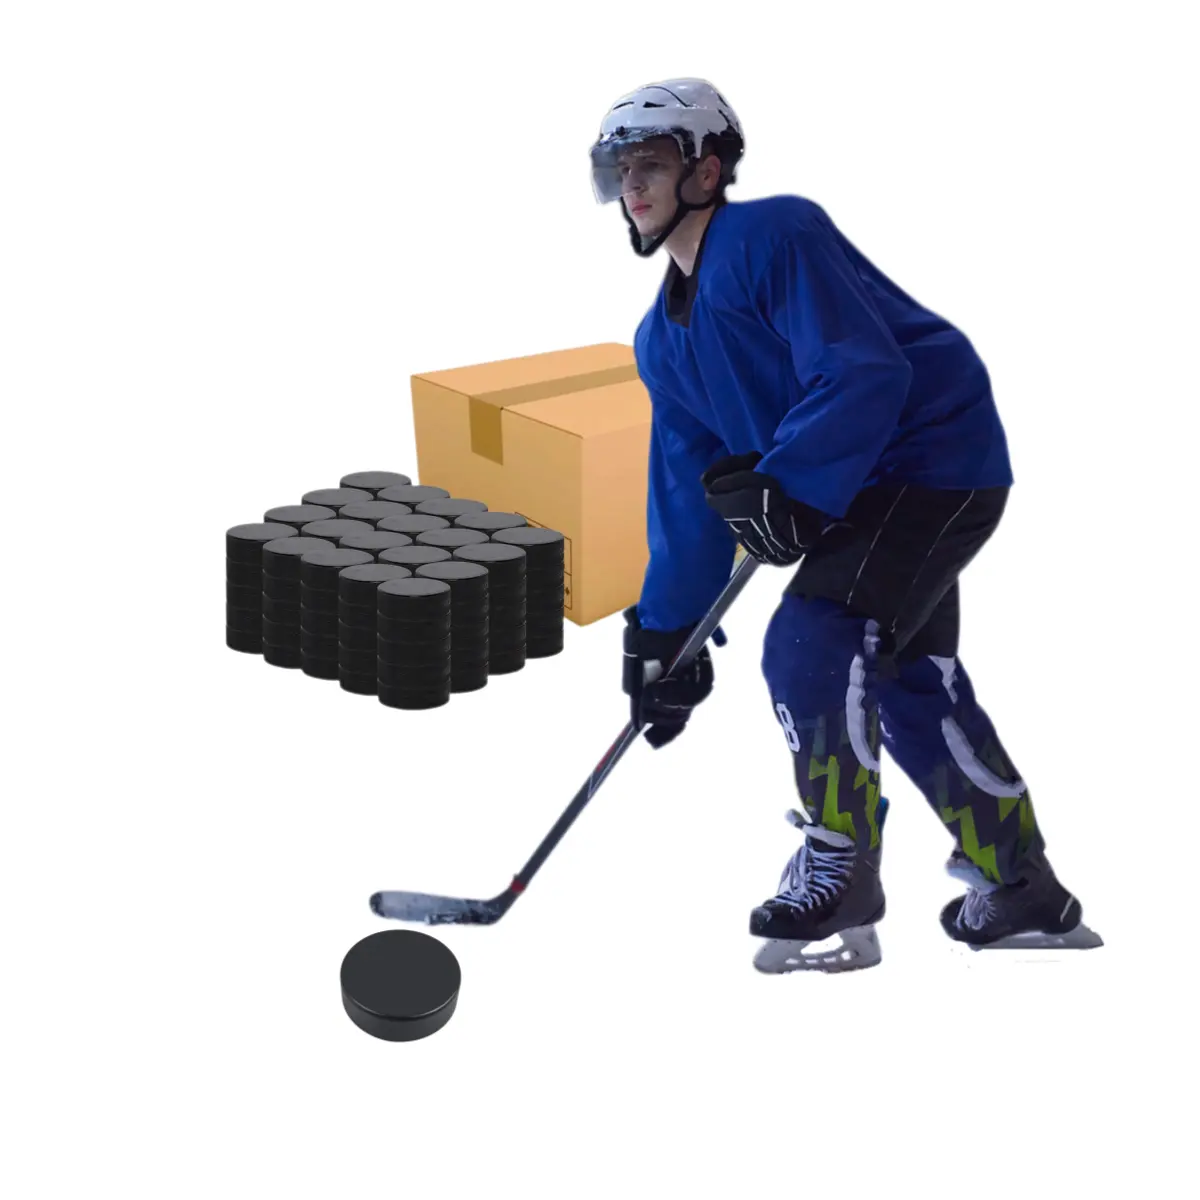 Оптовая цена, высококачественные прочные мячи для хоккея с шайбой с индивидуальным логотипом или пустым стандартным весом, однотонные популярные резиновые шайбы Hocksey